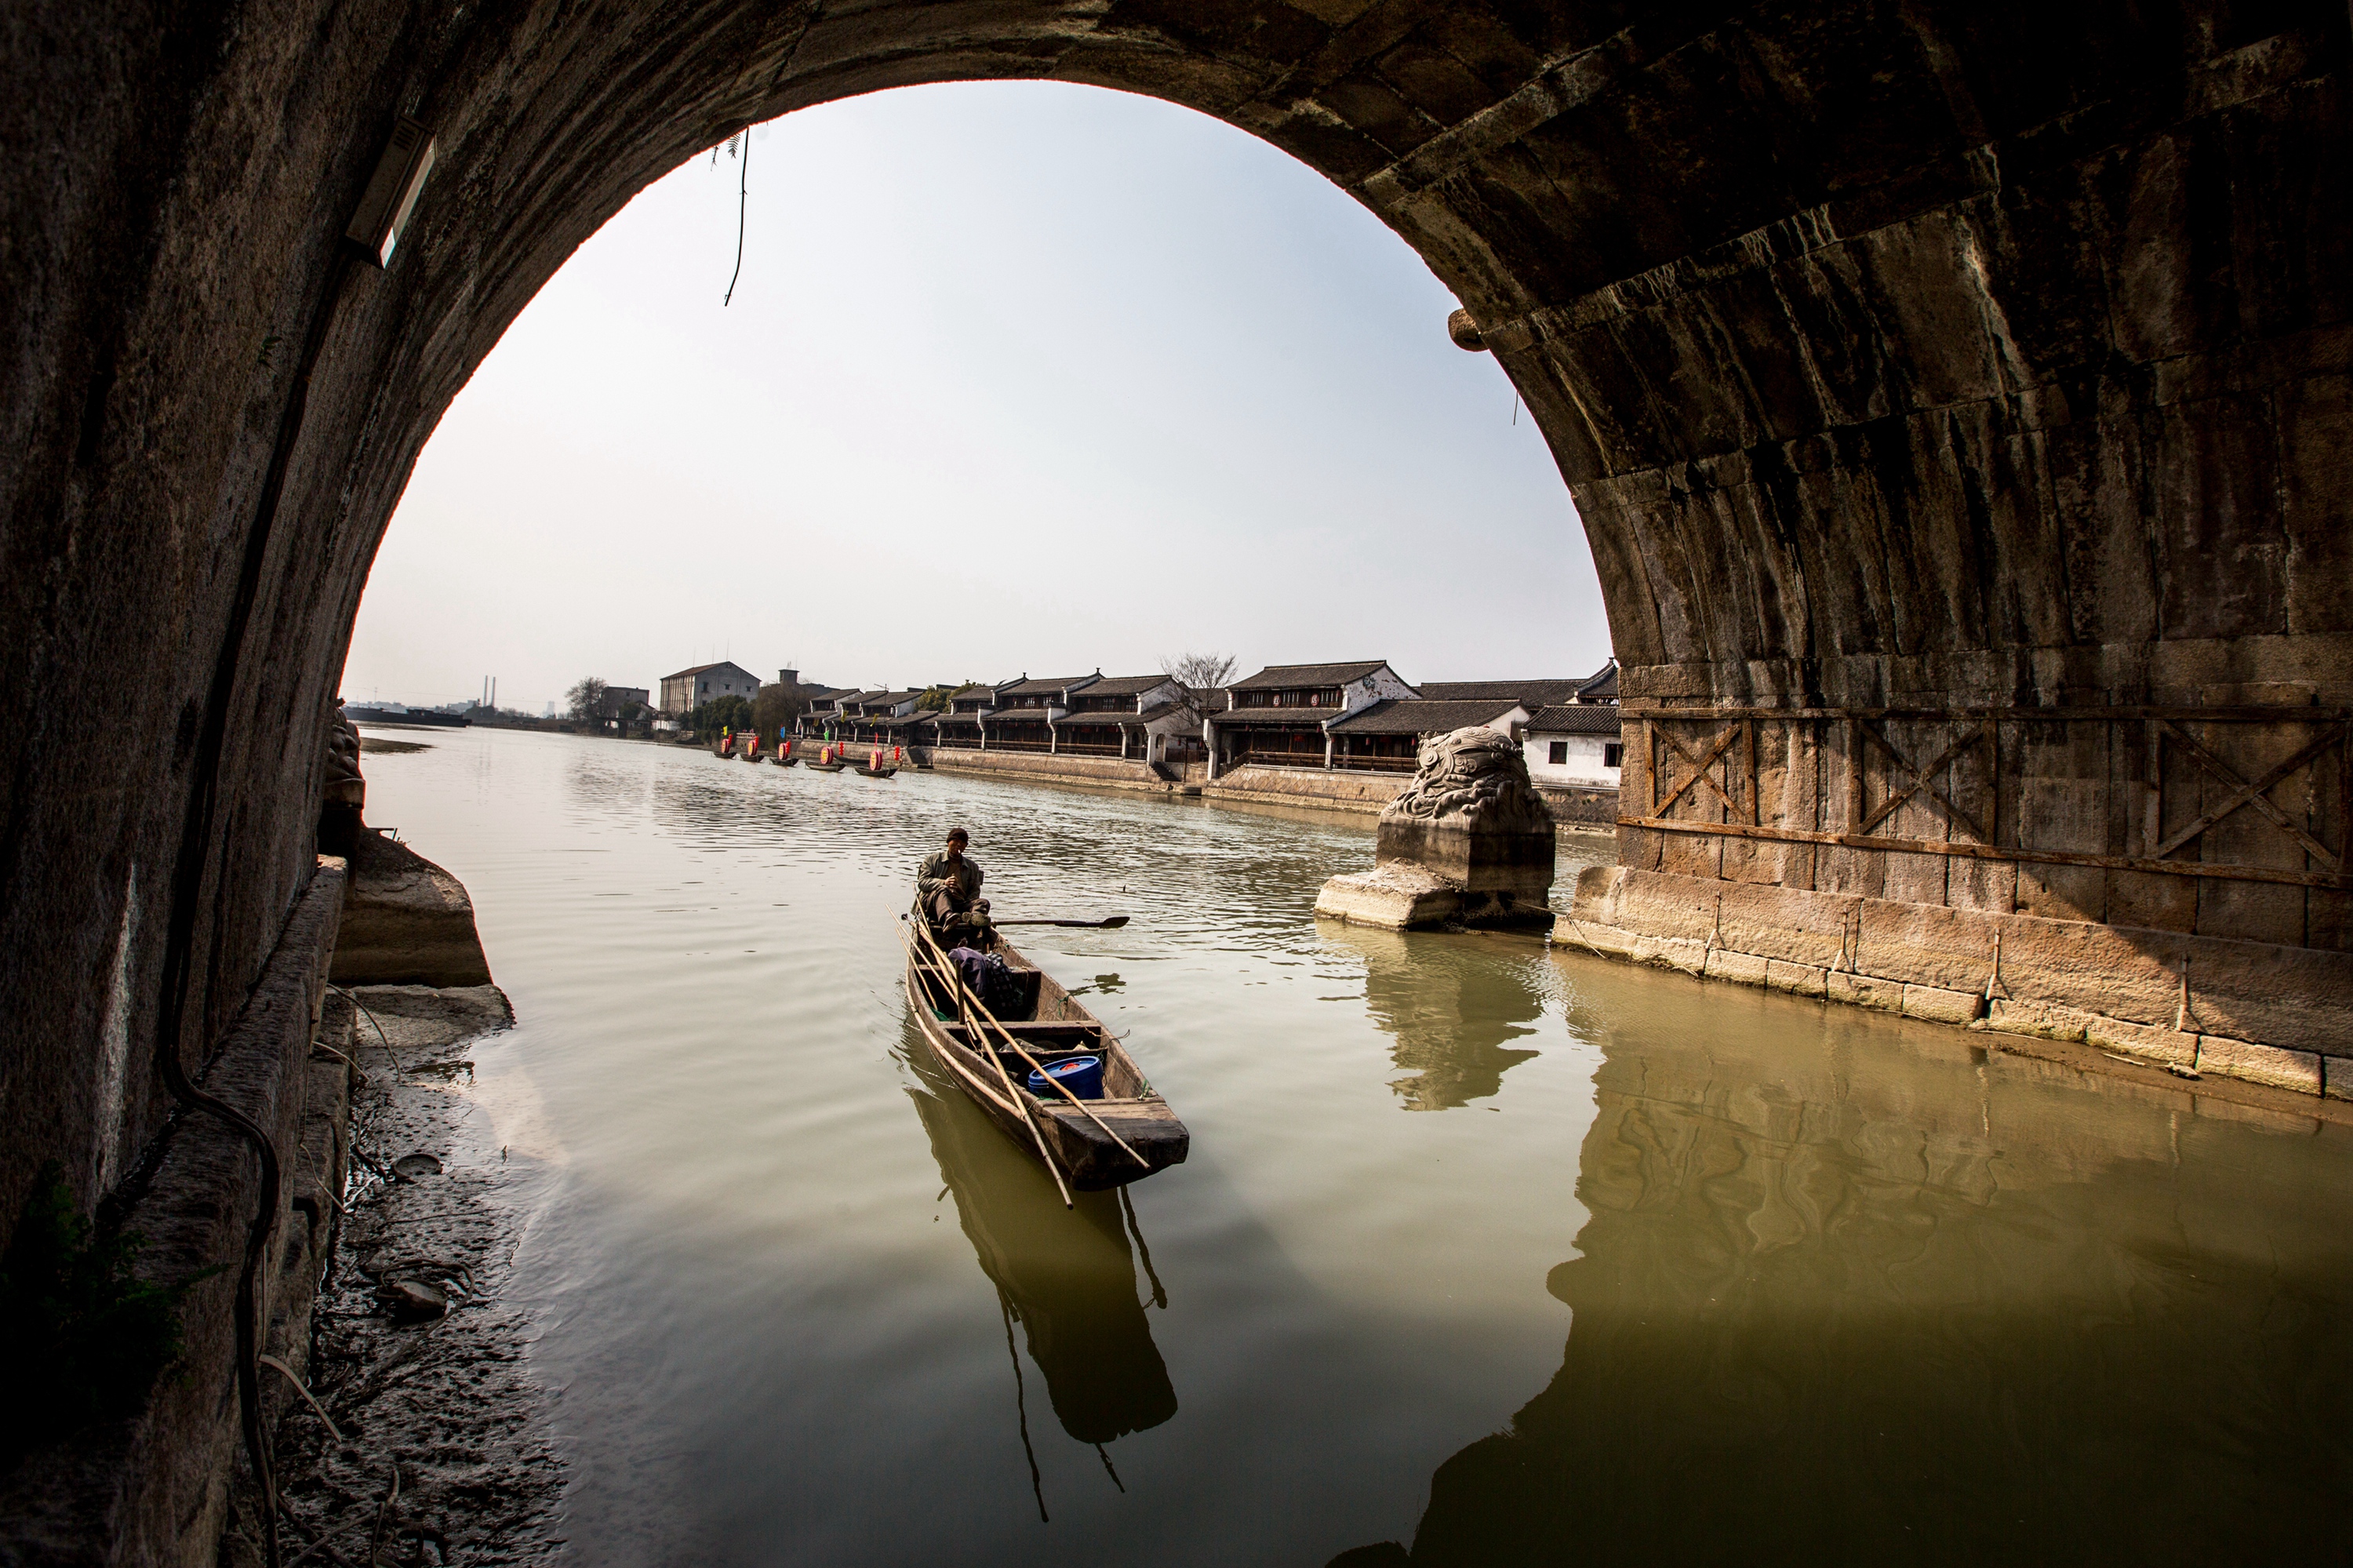 京杭大运河,一首吟诵千年的民俗文化诗歌